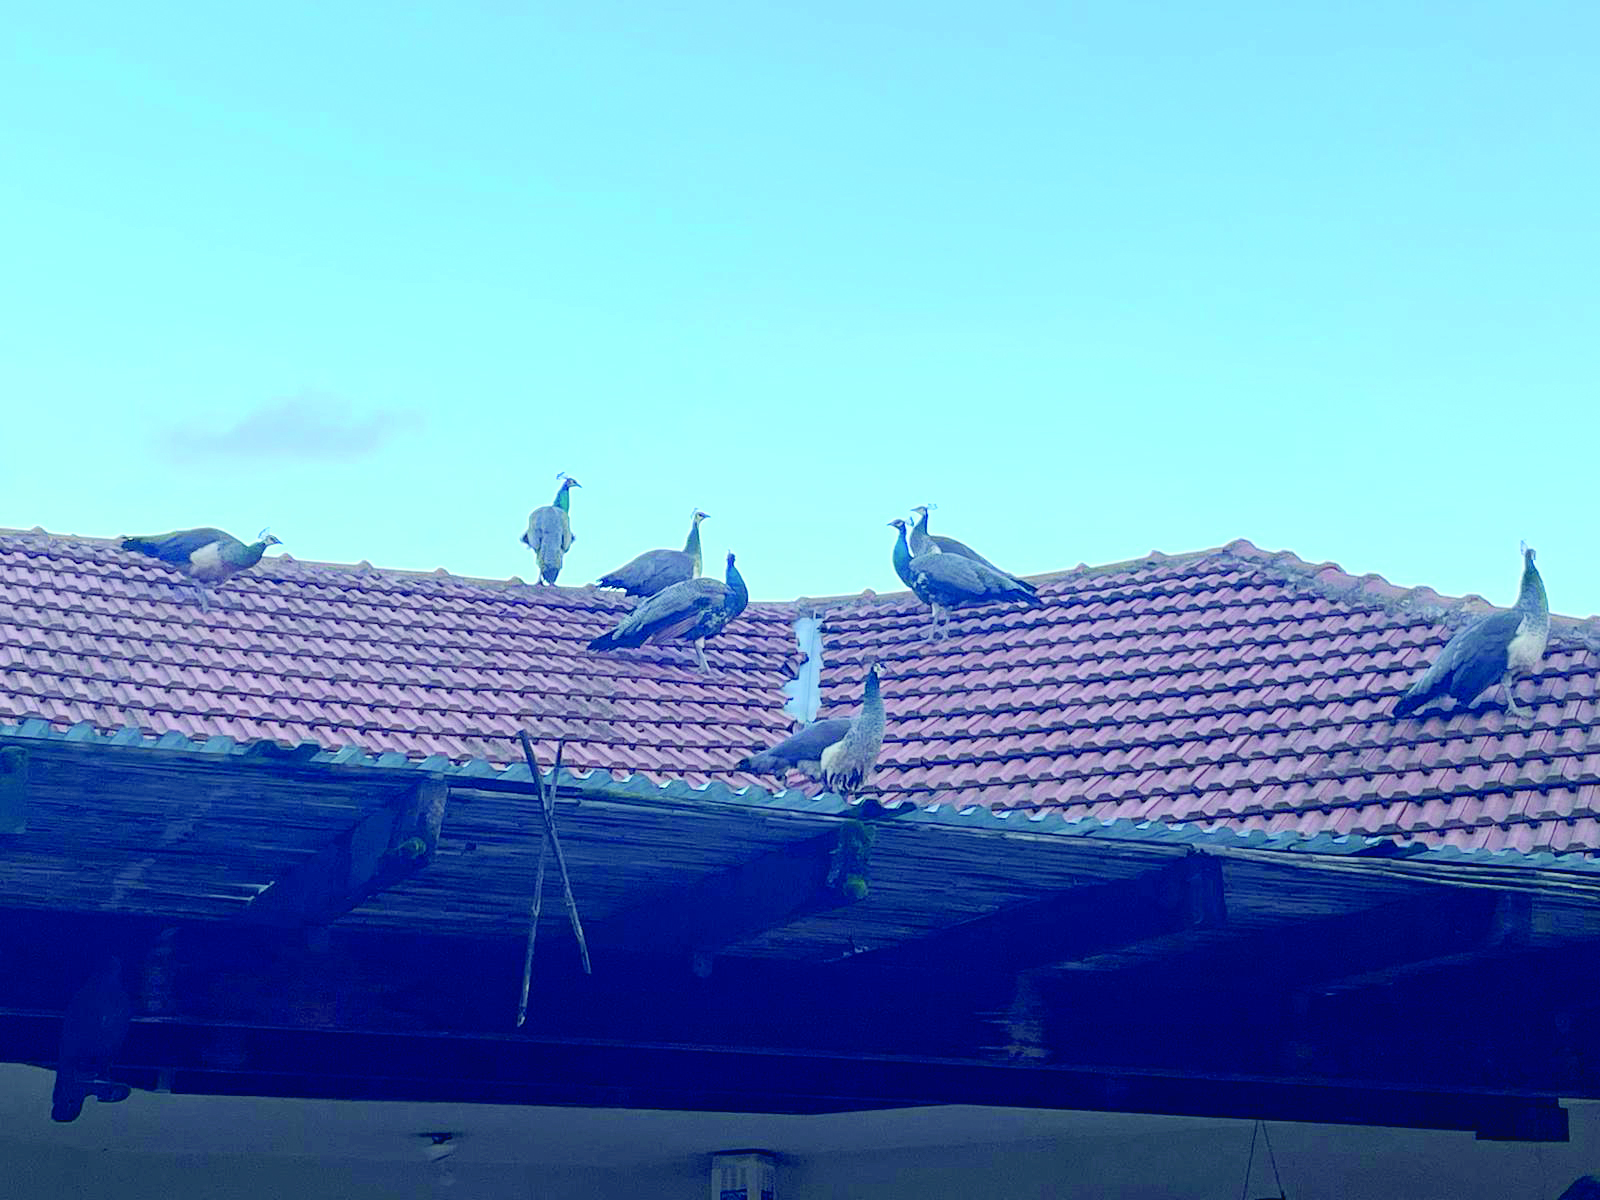 הטווסים על גג בית בניר בנים צילום איריס לוי